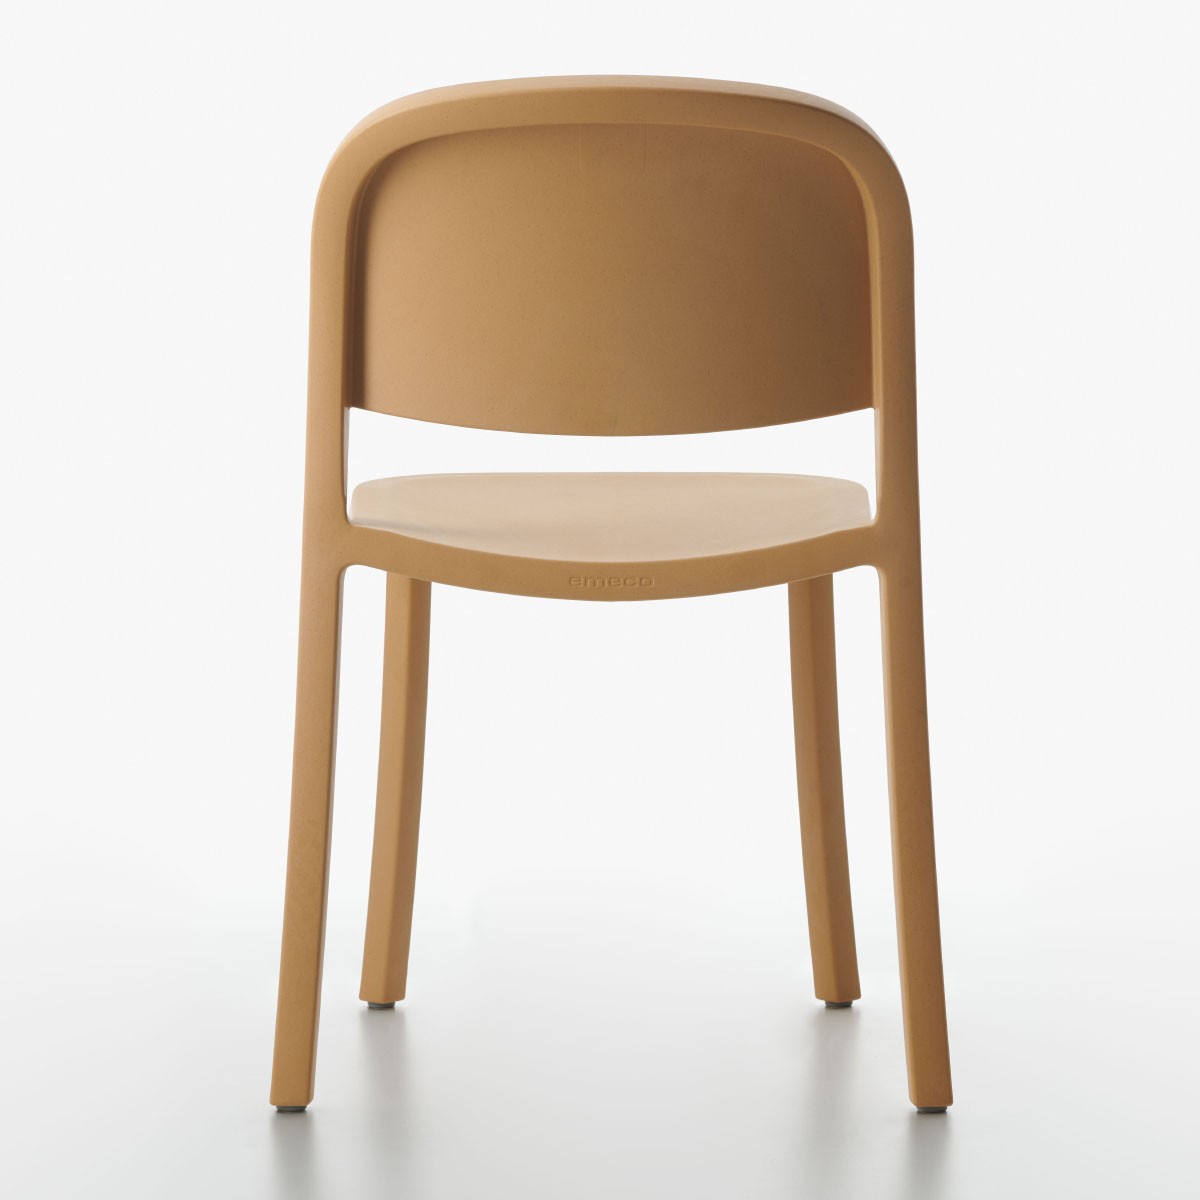 Stuhl 1 Inch Reclaimed Light Grey – 2er Set